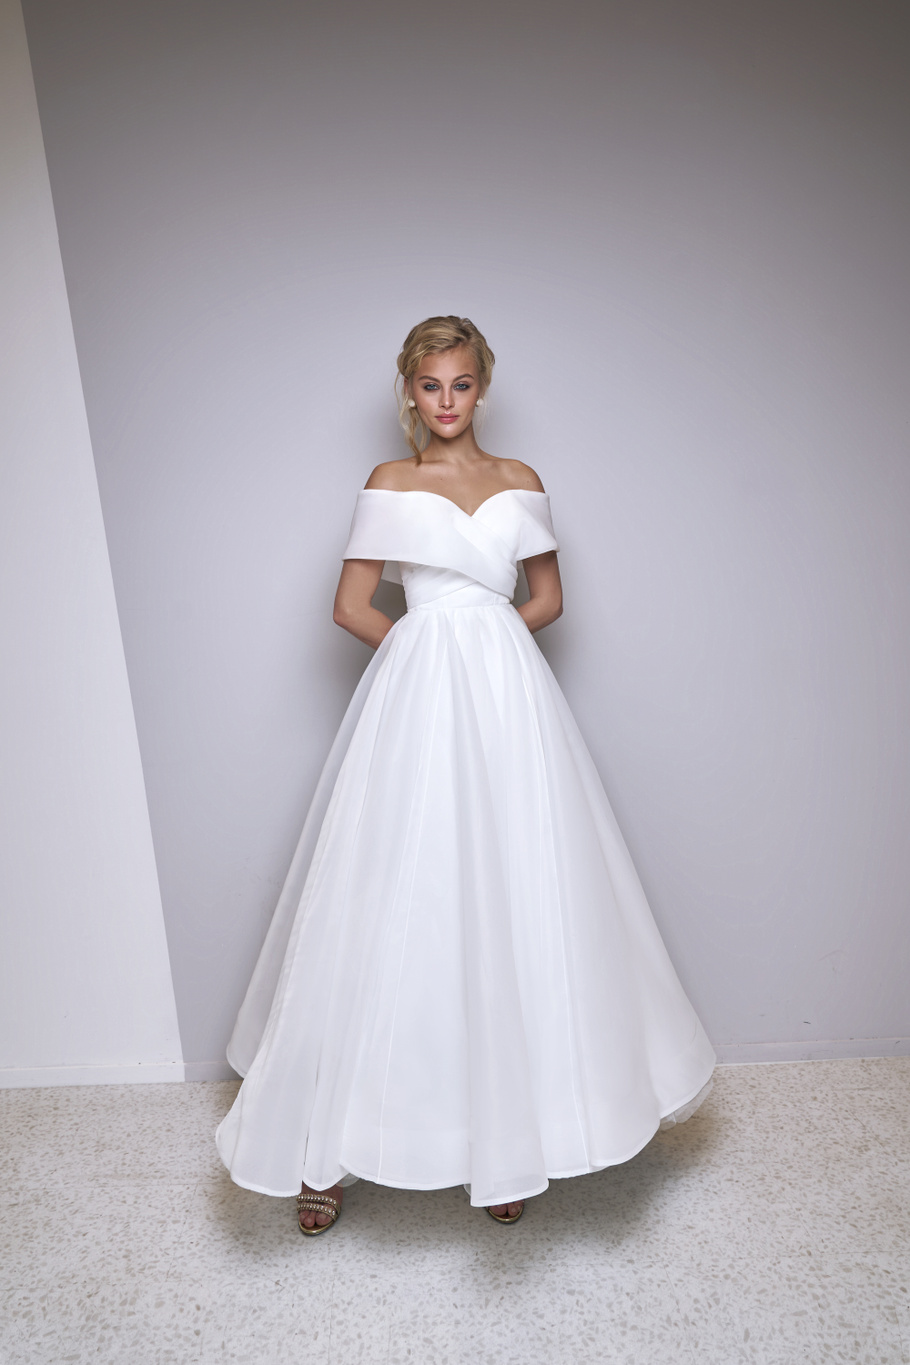 Свадебное платье «Олджи» Марта — купить в Москве платье Олджи из коллекции 2021 года